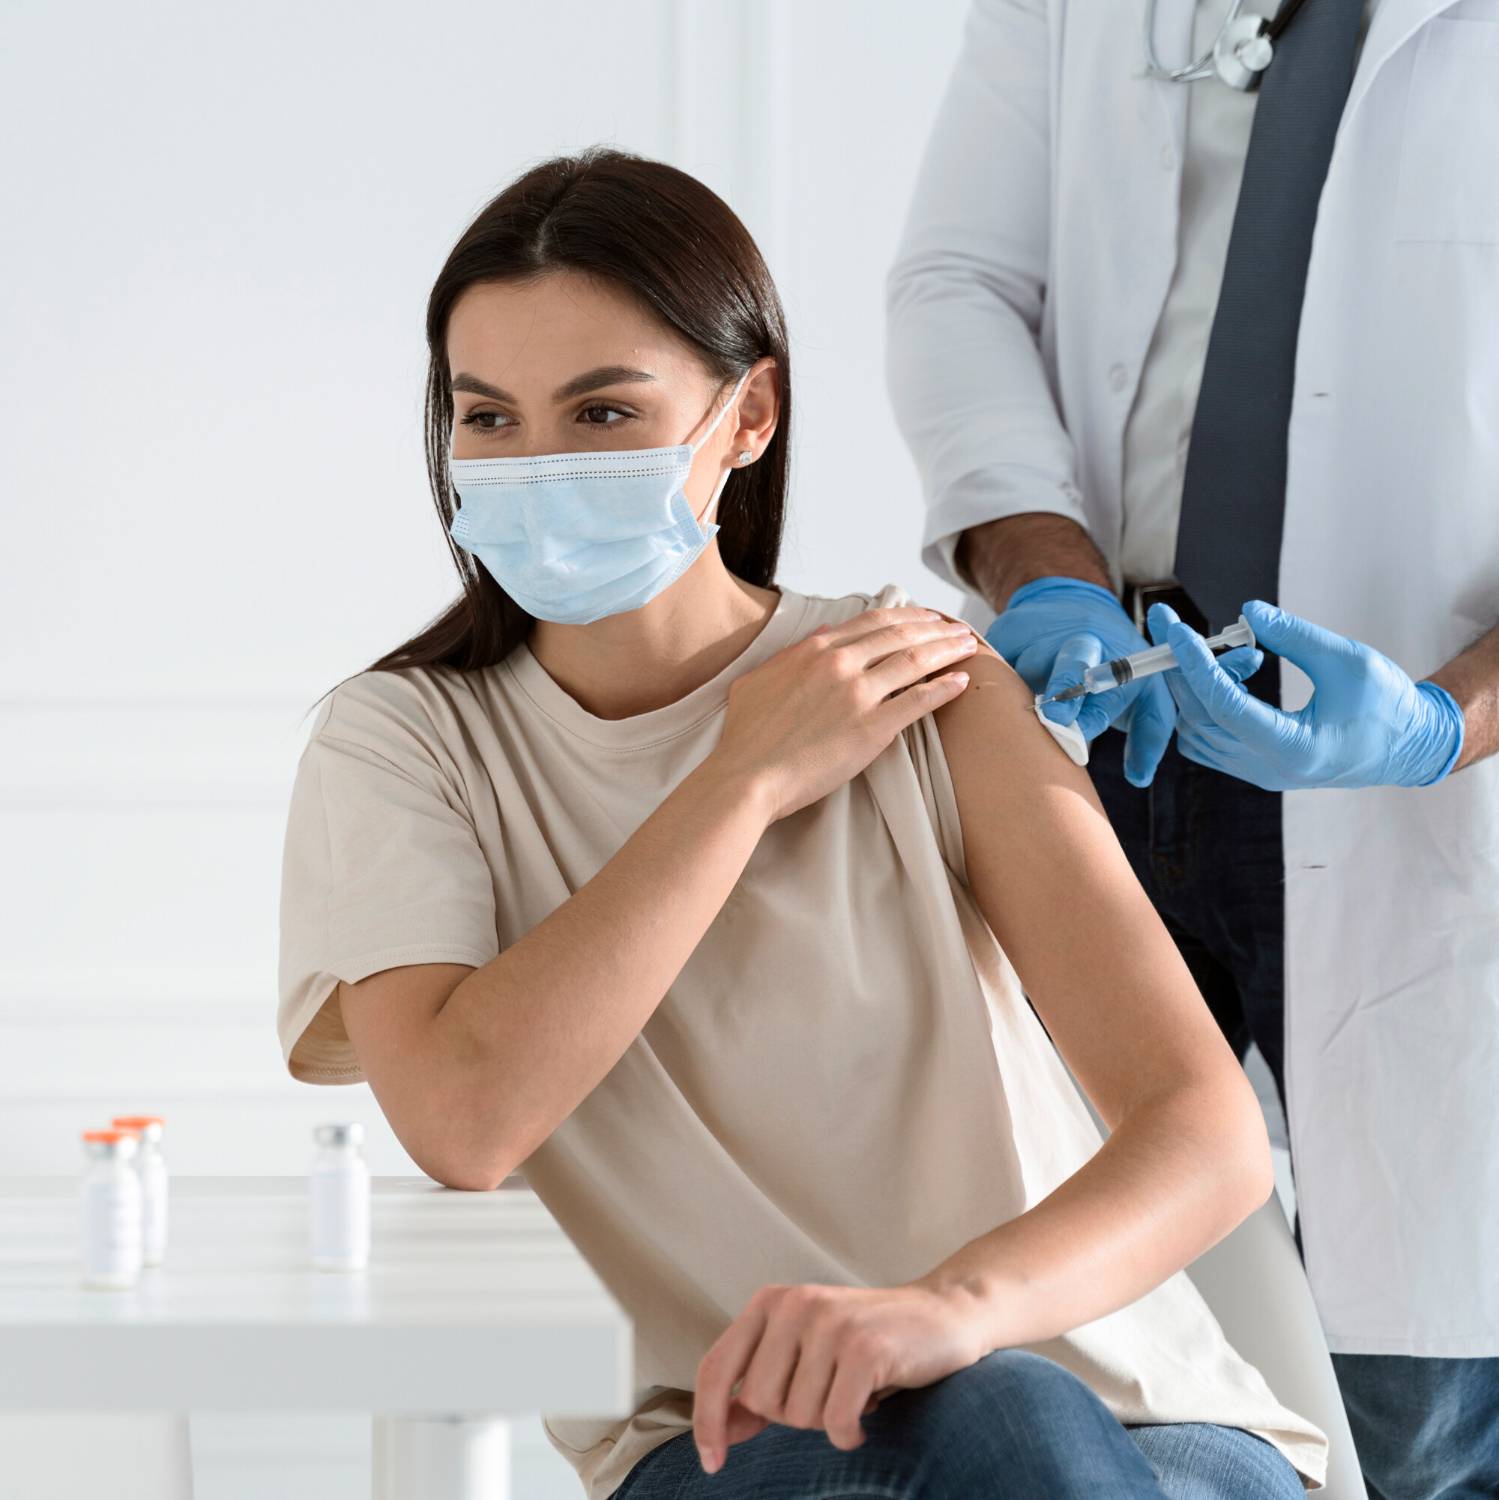 Grip Sonrası Kalp Krizi Tehlikesi: Önlemler ve Aşılar